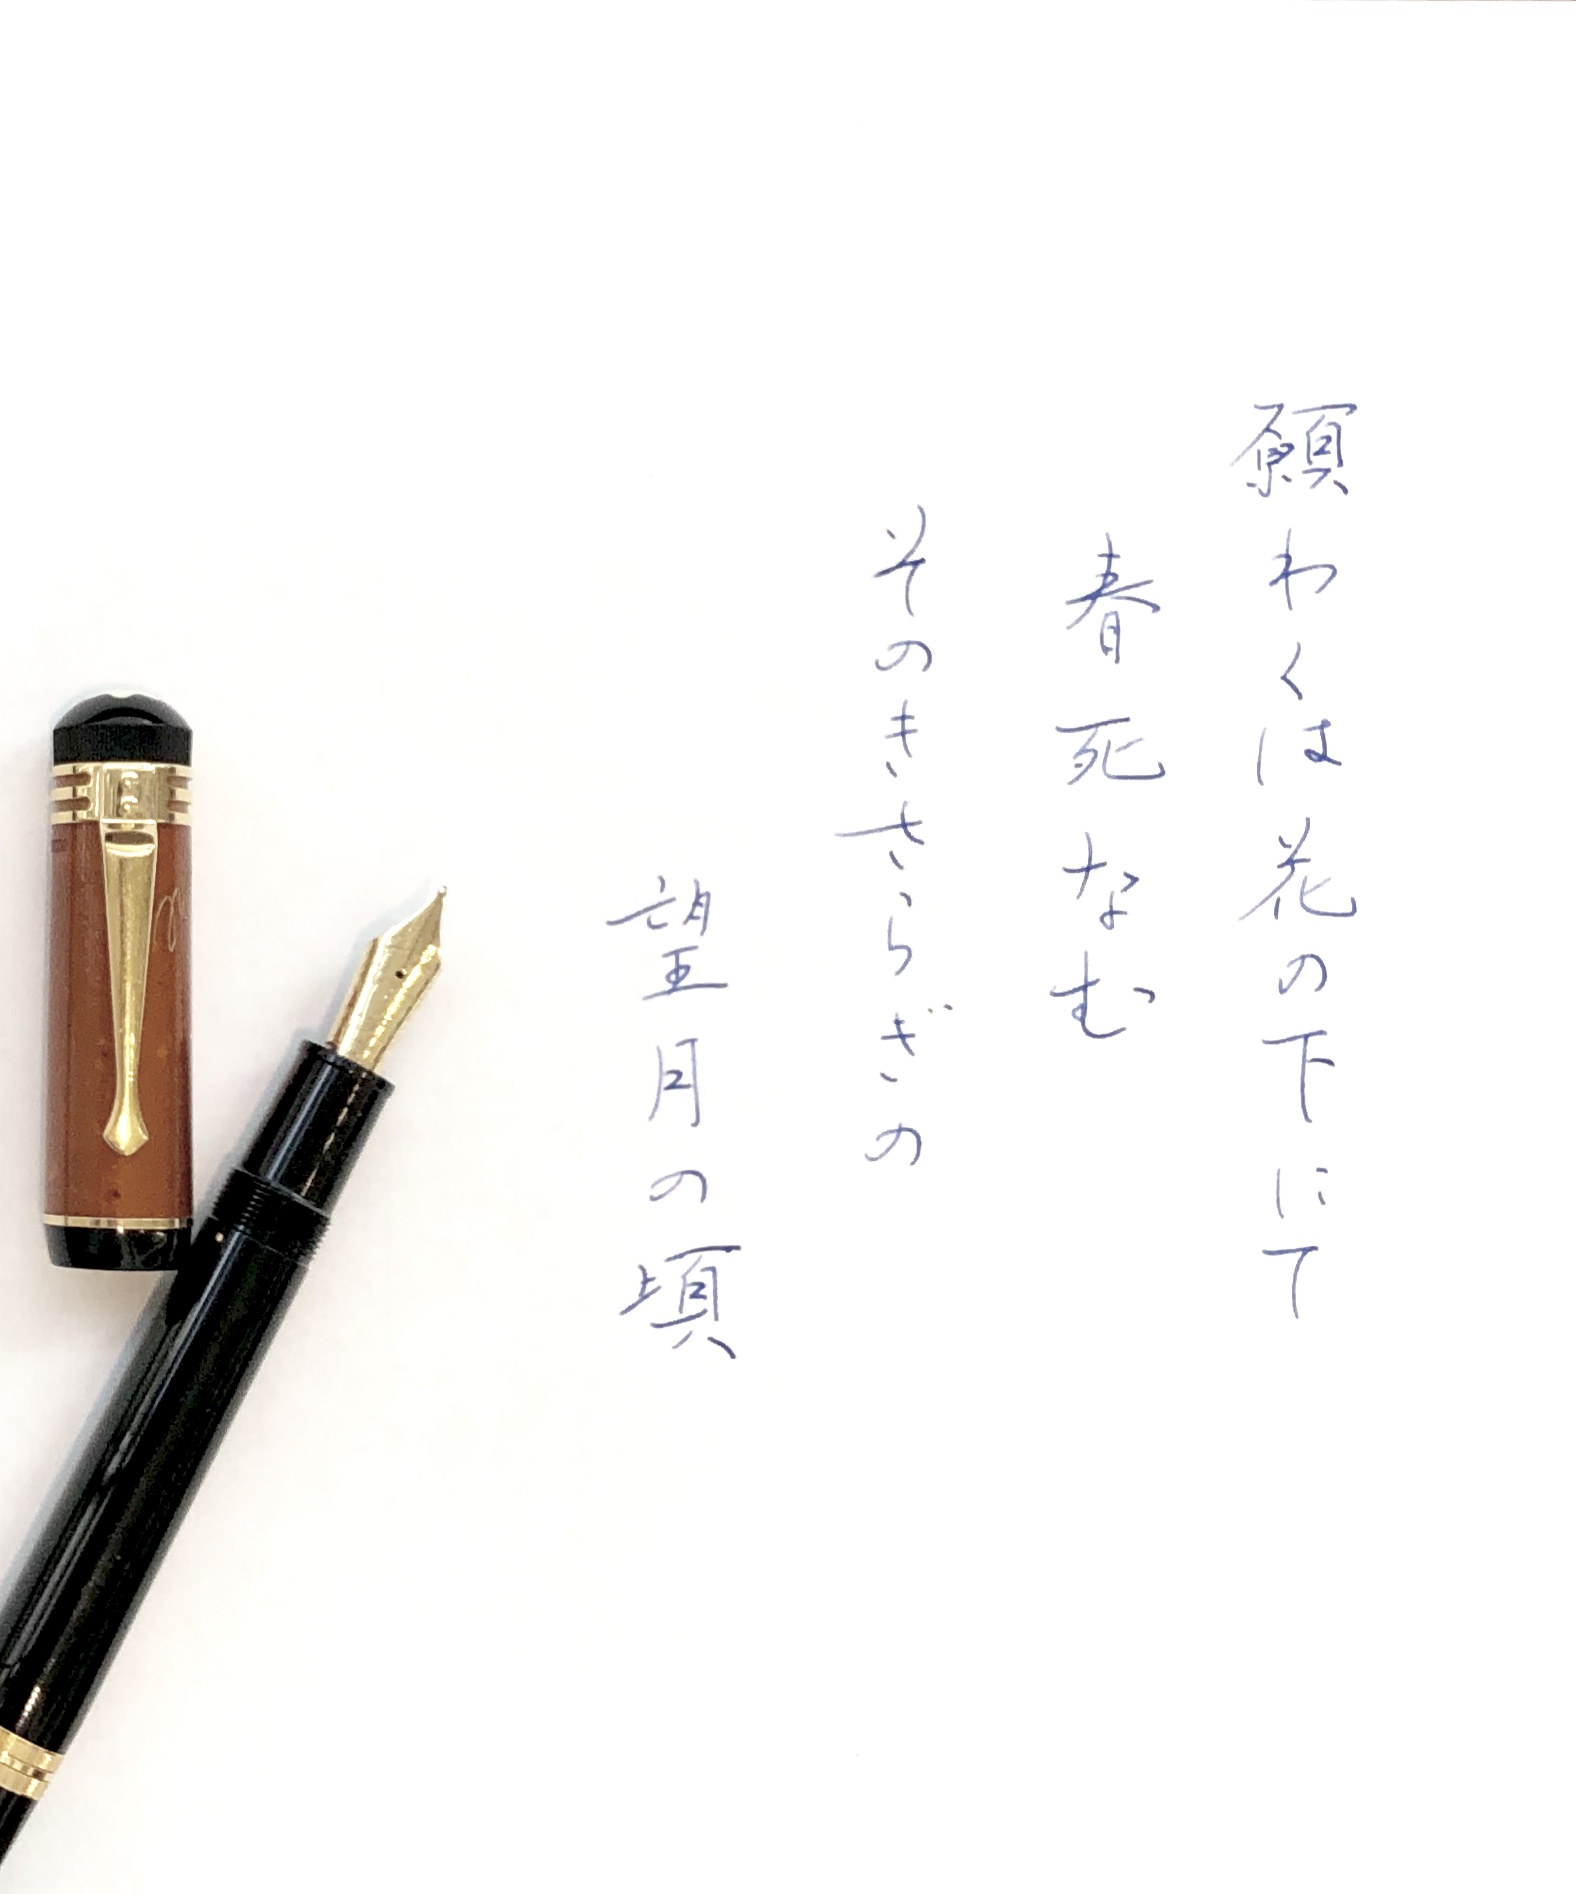 http://kanezaki.net/blog/penmanship-01.JPG